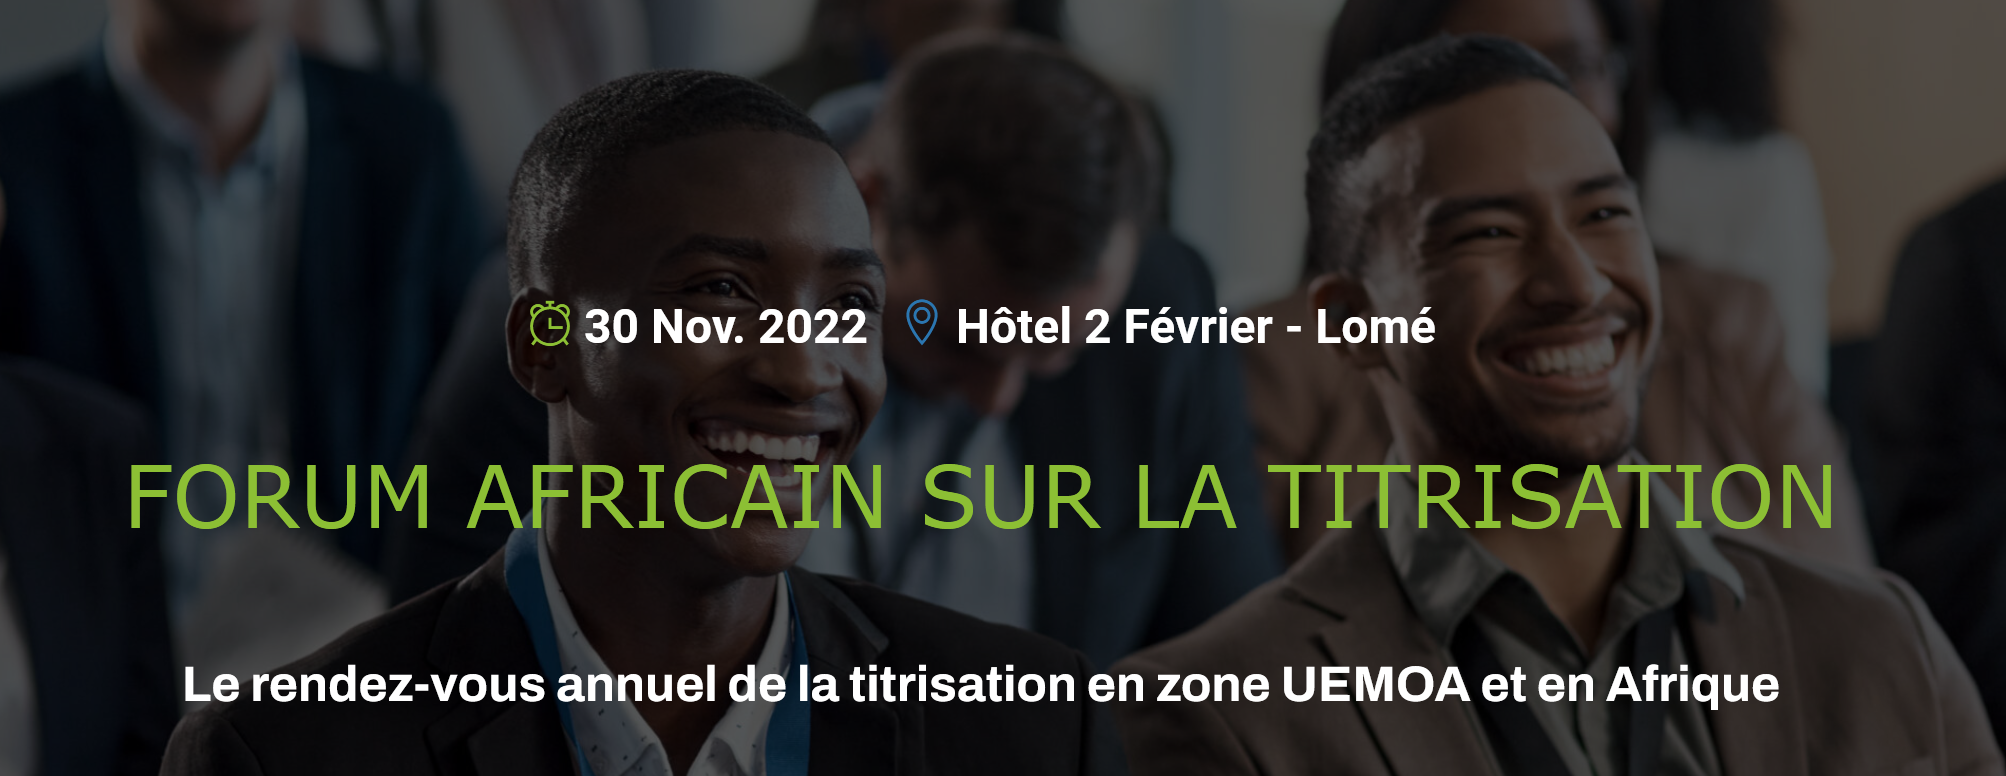 La BRVM sponsor du Forum Africain sur la Titrisation, 30 novembre 2022 à Lomé